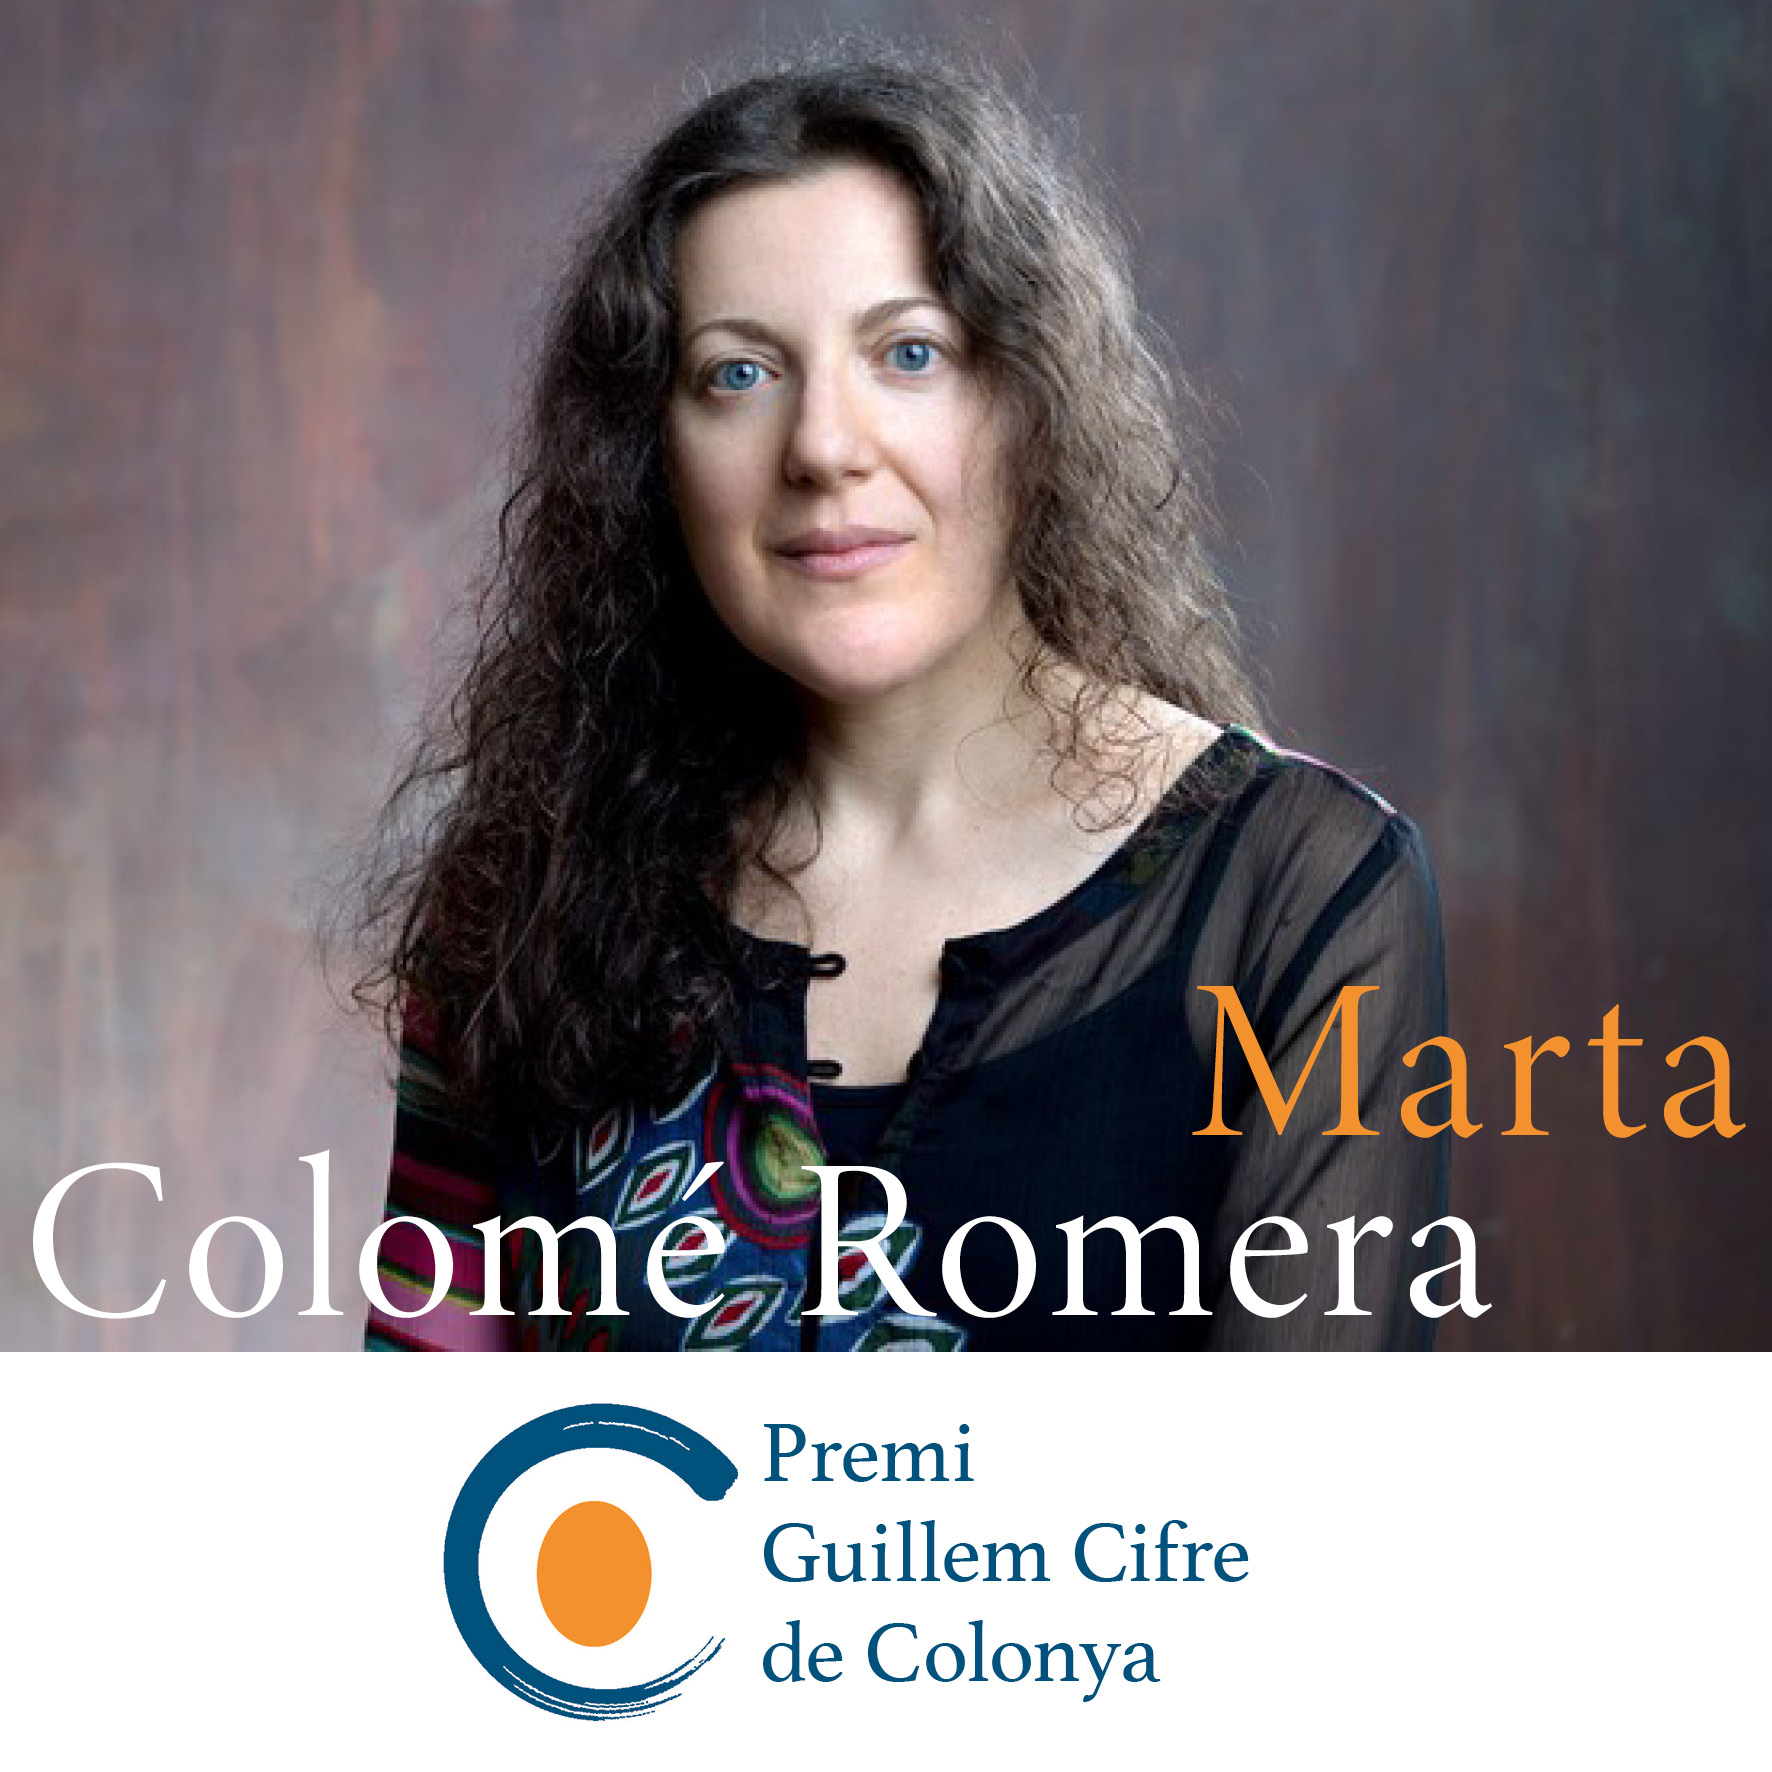 Marta Colomé Romera guanya el XL Premi Guillem Cifre de Colonya 2021